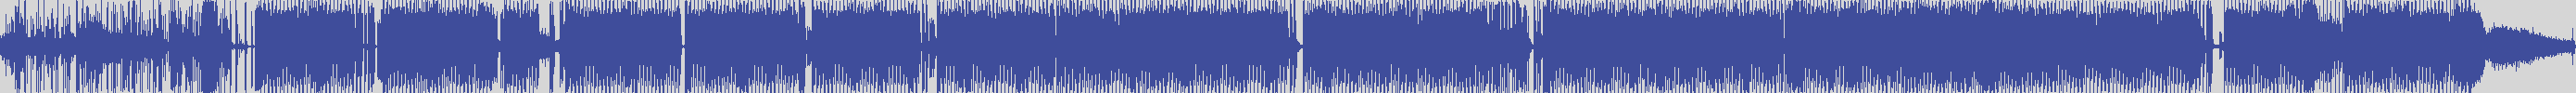 vitti_records [VIT010] Ticom - Foxxx [Original Mix] audio wave form